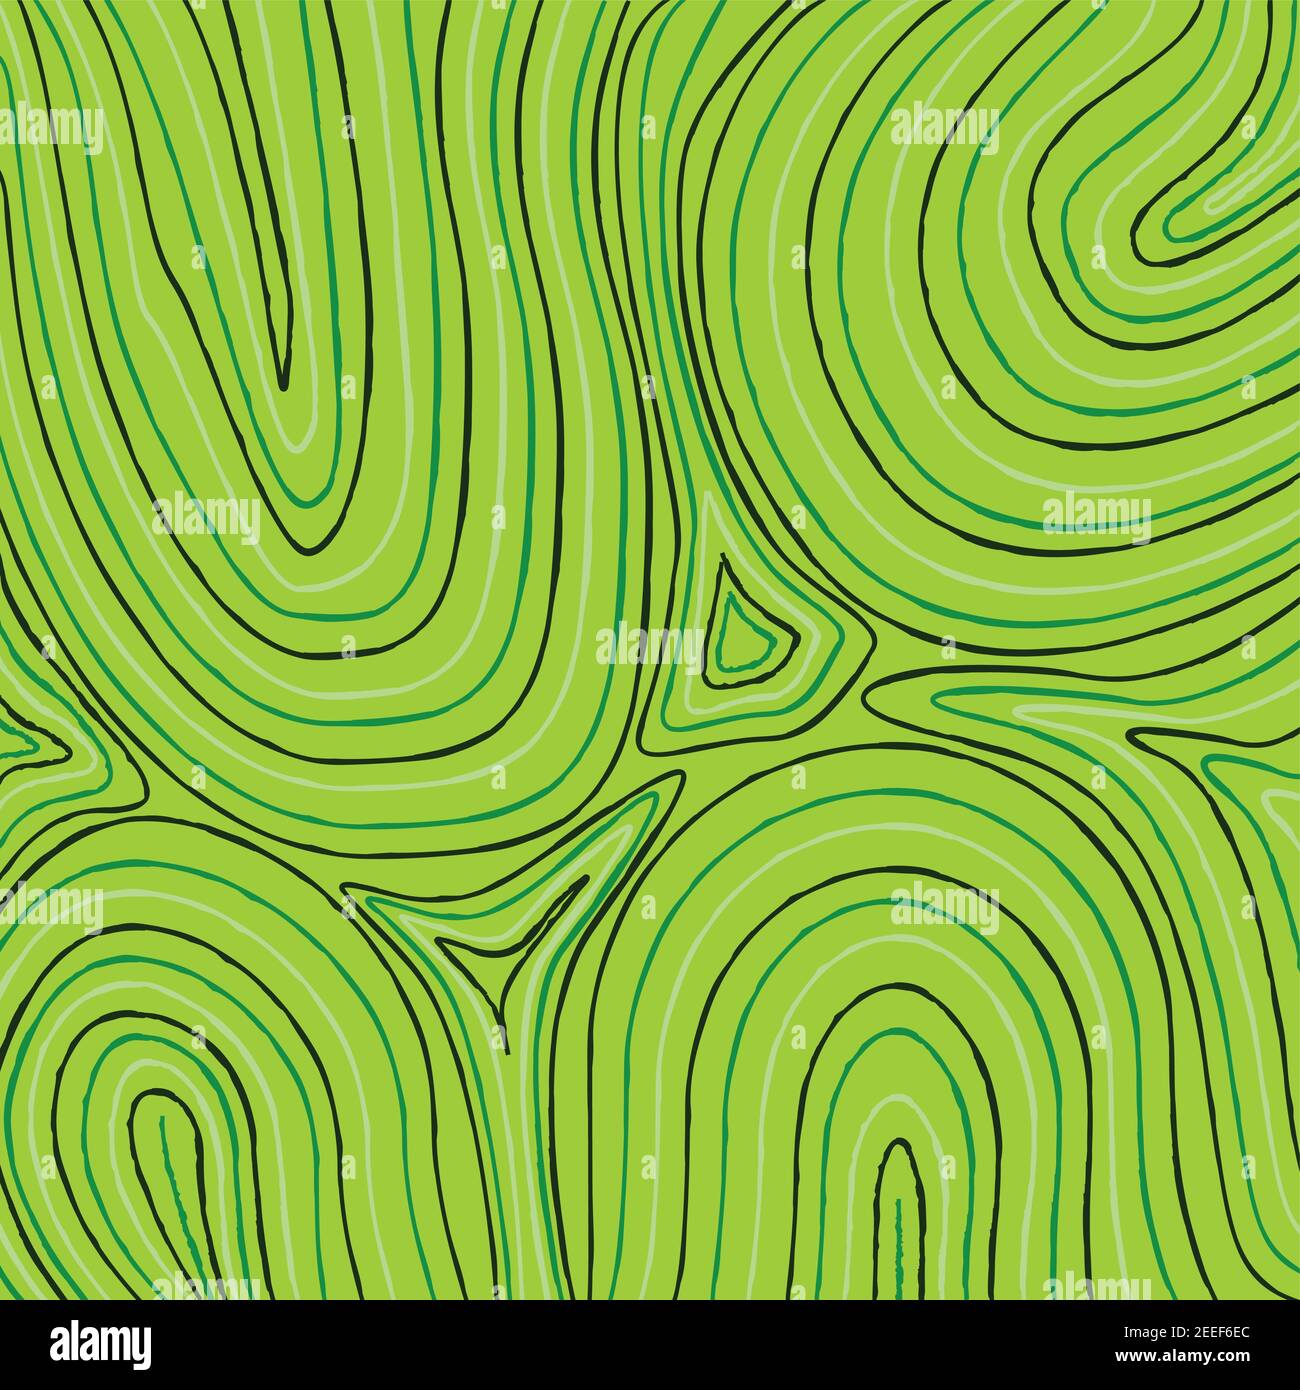 Australian Waterhole Landscape Aboriginal Art Background in vector format. Stock Vector